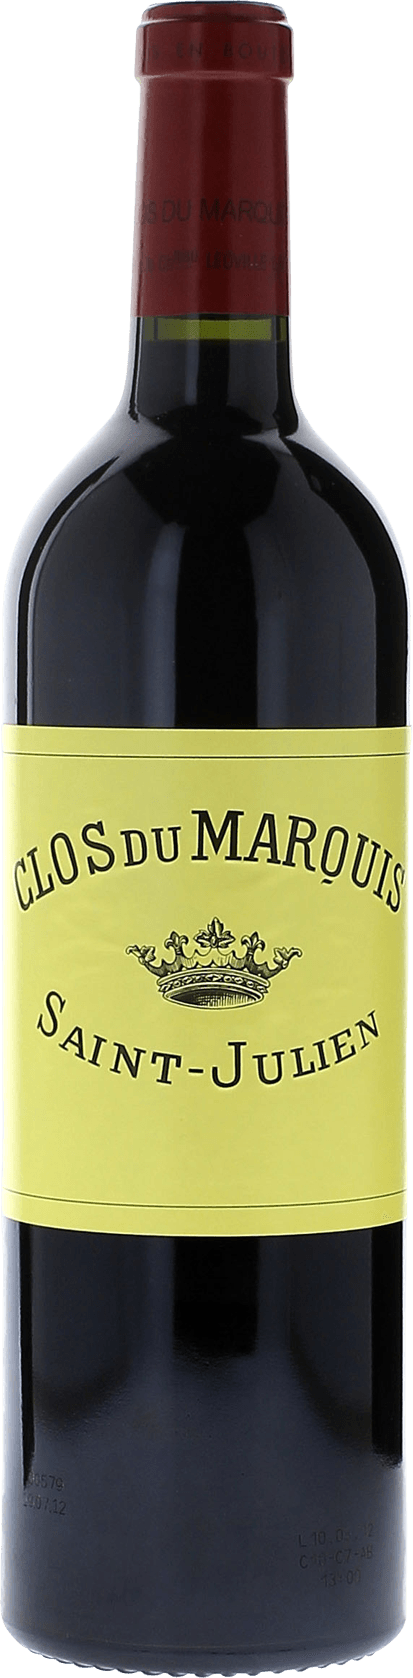 Clos du marquis 1985 2me vin de LEOVILLE LAS CASES Saint-Julien, Bordeaux rouge